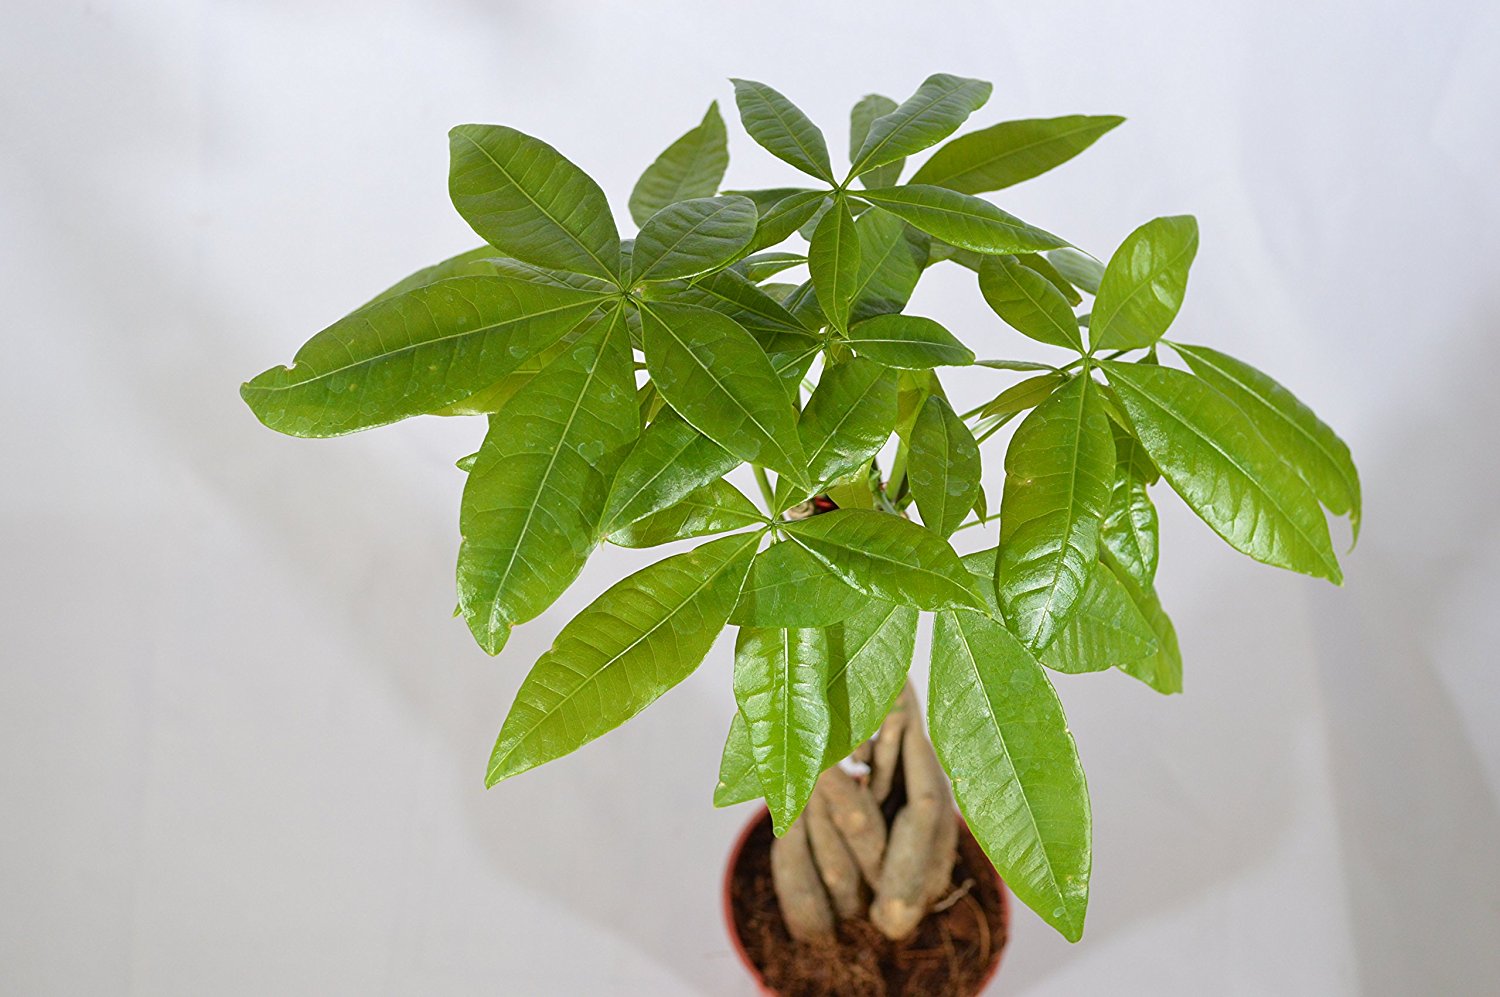 9GreenBox - Rare Mini Pachira Five Braided Tree Bring Luck Pachira Houseplant Bonsai - 9GreenBox